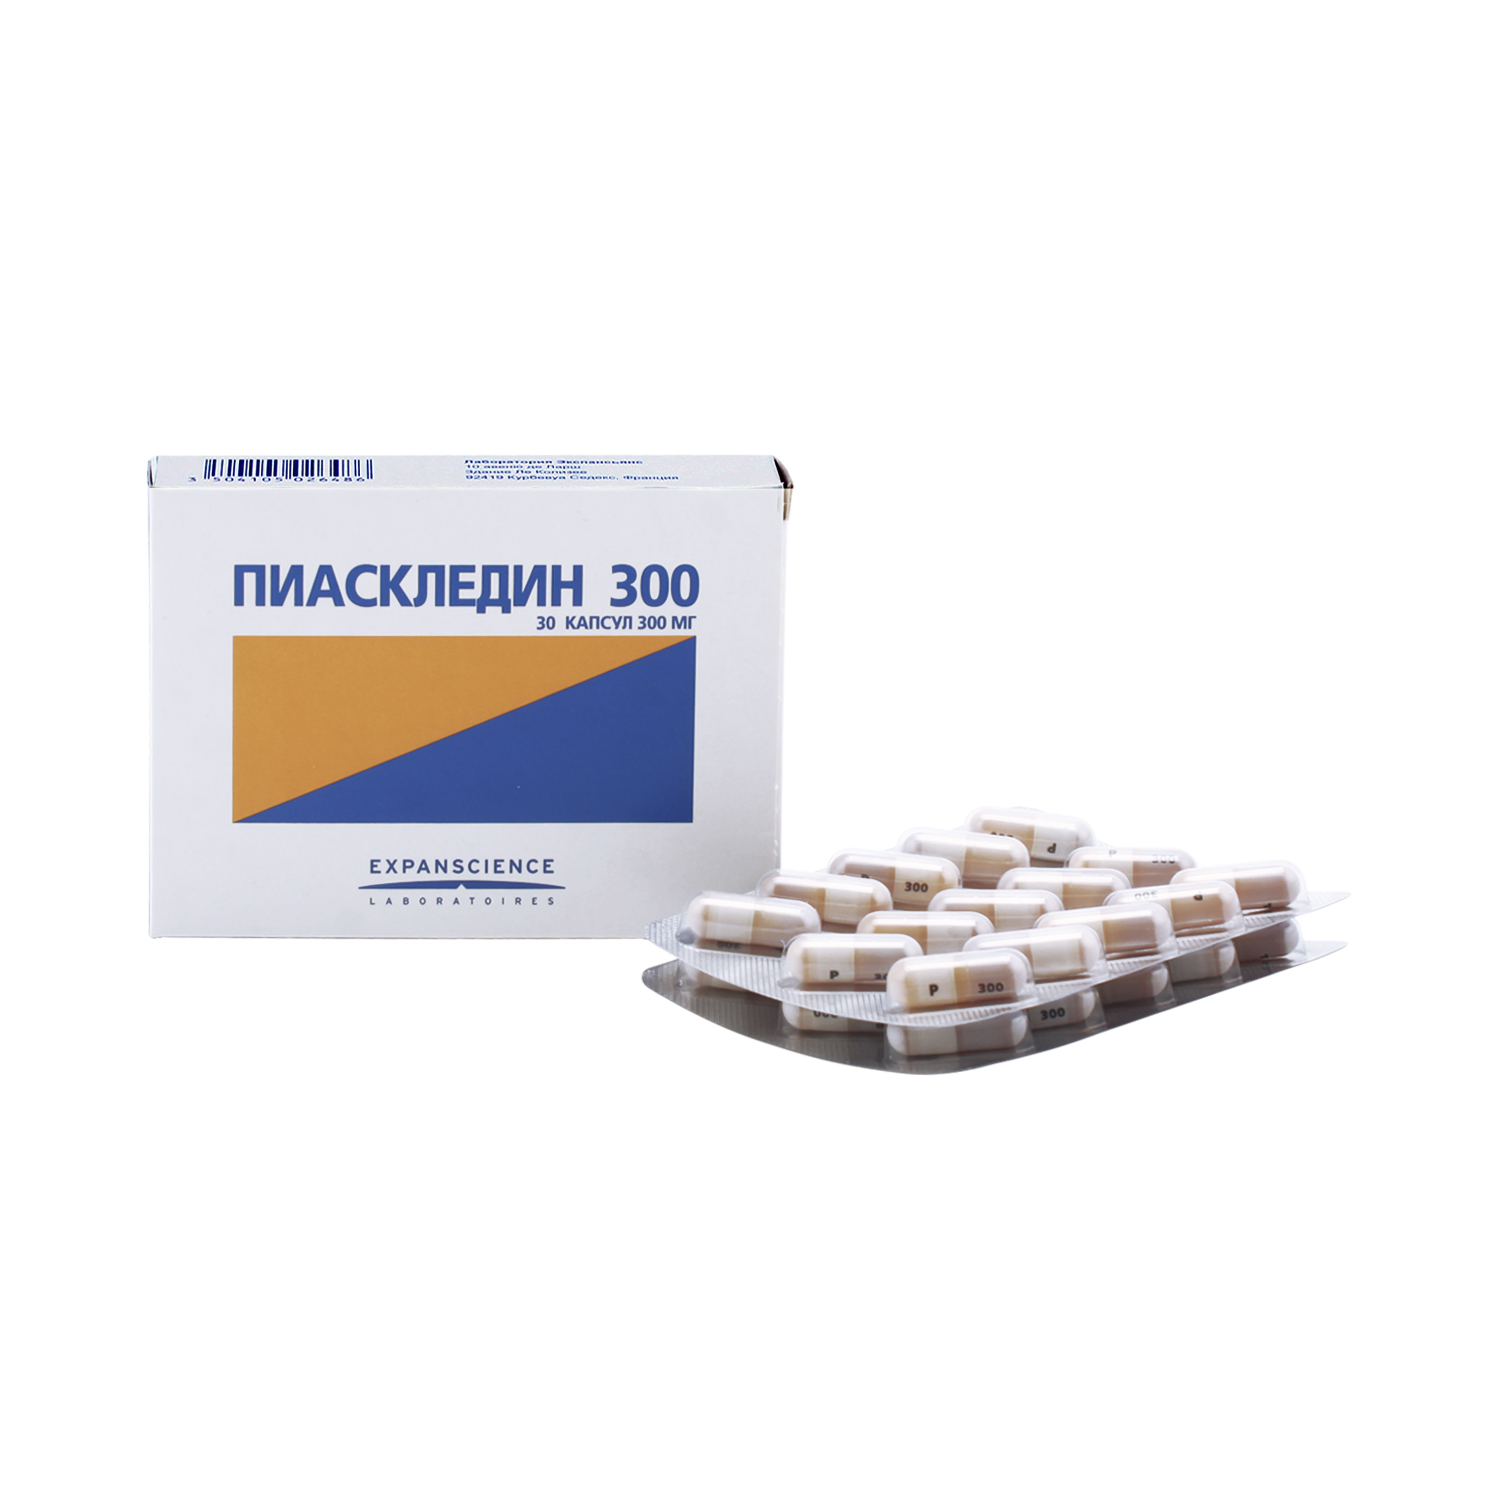 Пиаскледин 300 Капсулы 300 мг 30 шт,  Piascledine по цене 1 924,0 .